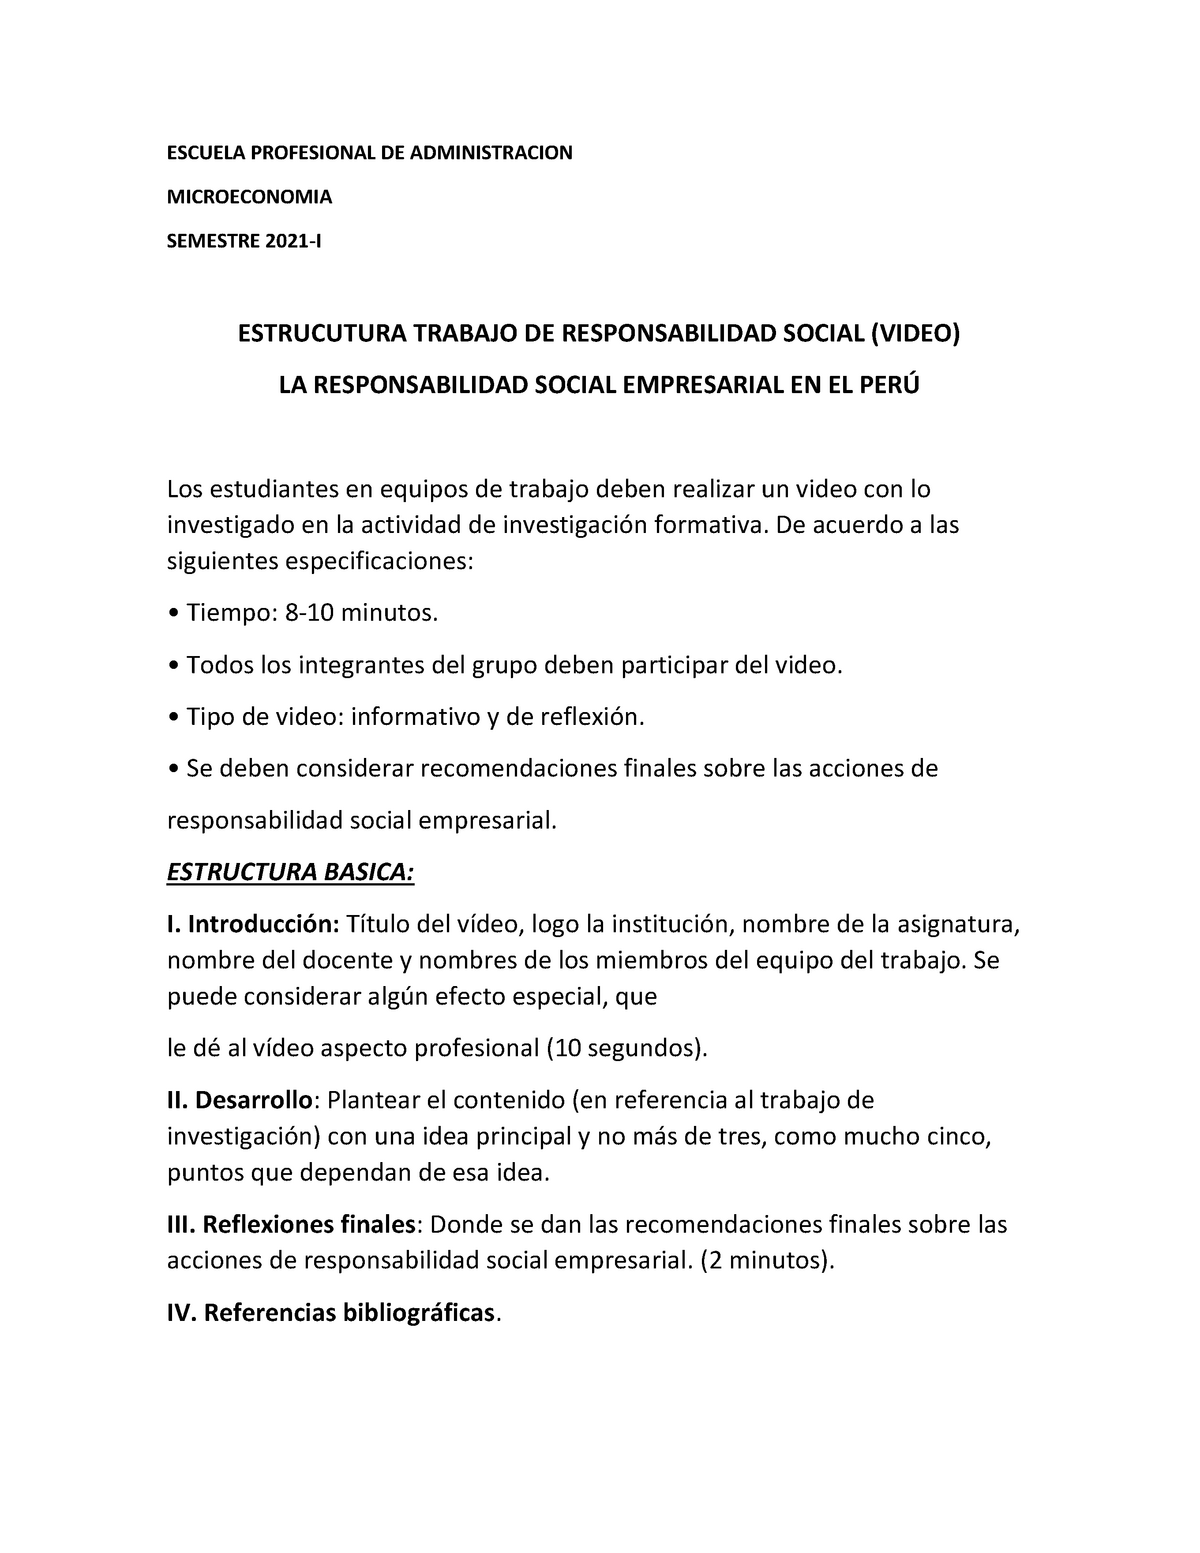 Trabajo DE Responsabilidad Social - ESCUELA PROFESIONAL DE ADMINISTRACION  MICROECONOMIA SEMESTRE - Studocu